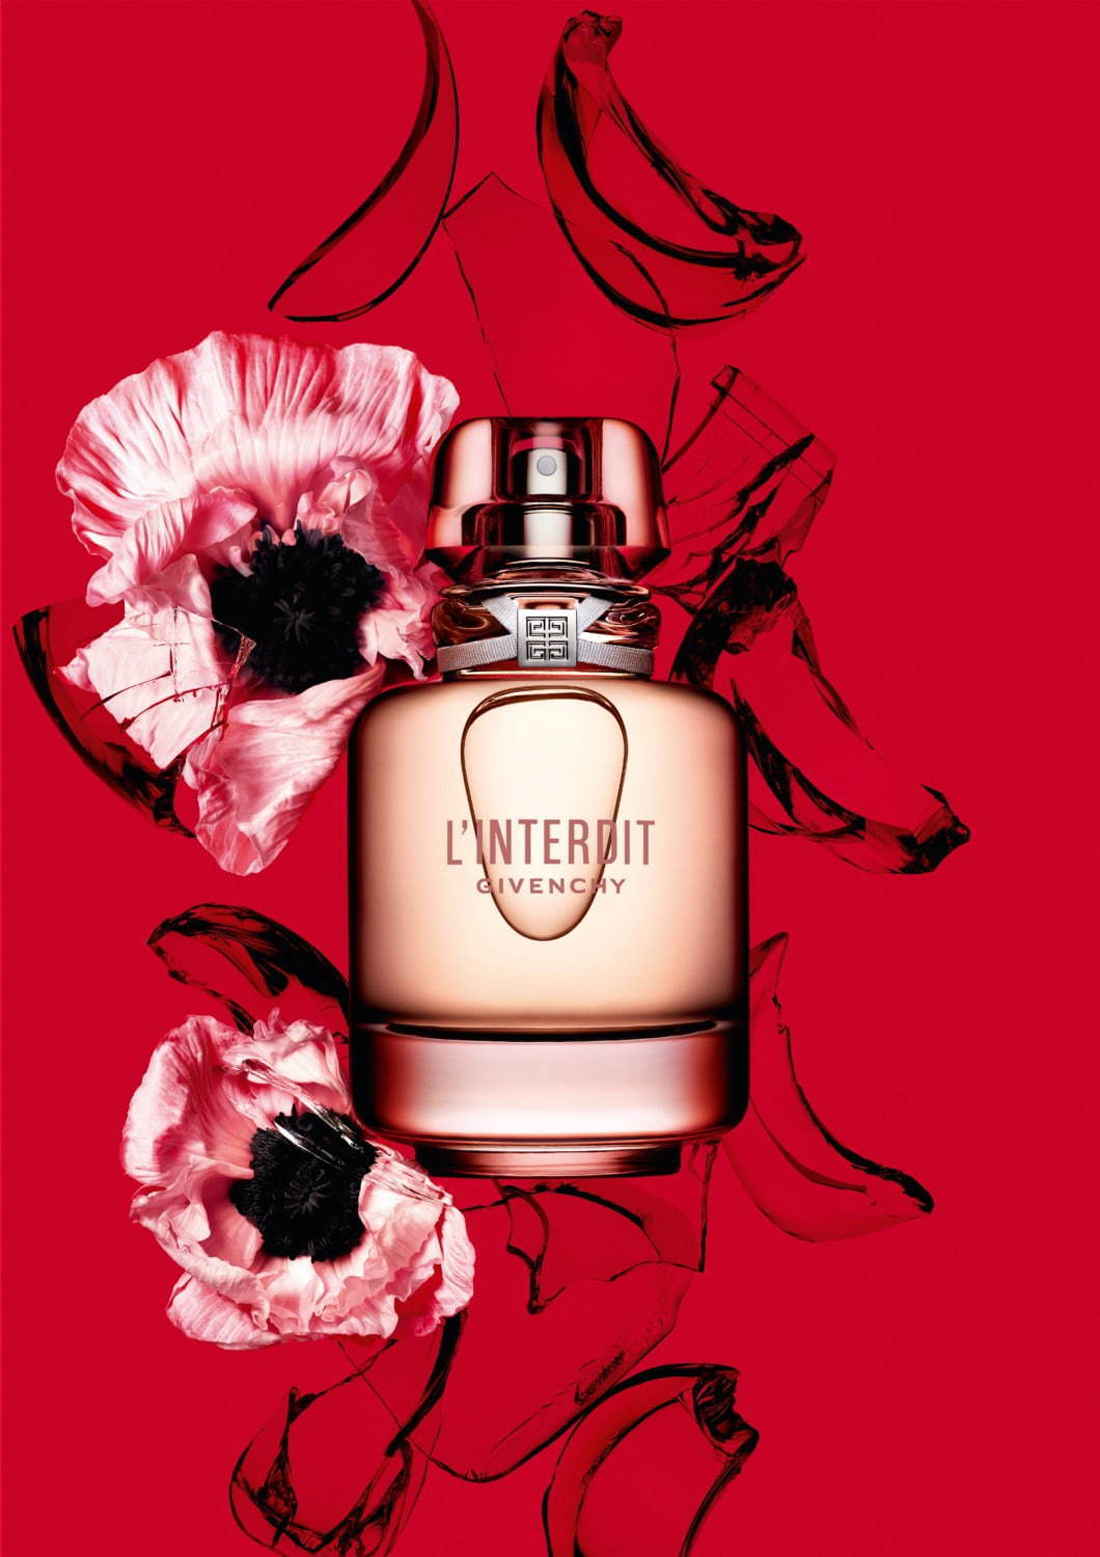 Linterdit Eau De Toilette Givenchy Perfume A Fragrance For Women 2019